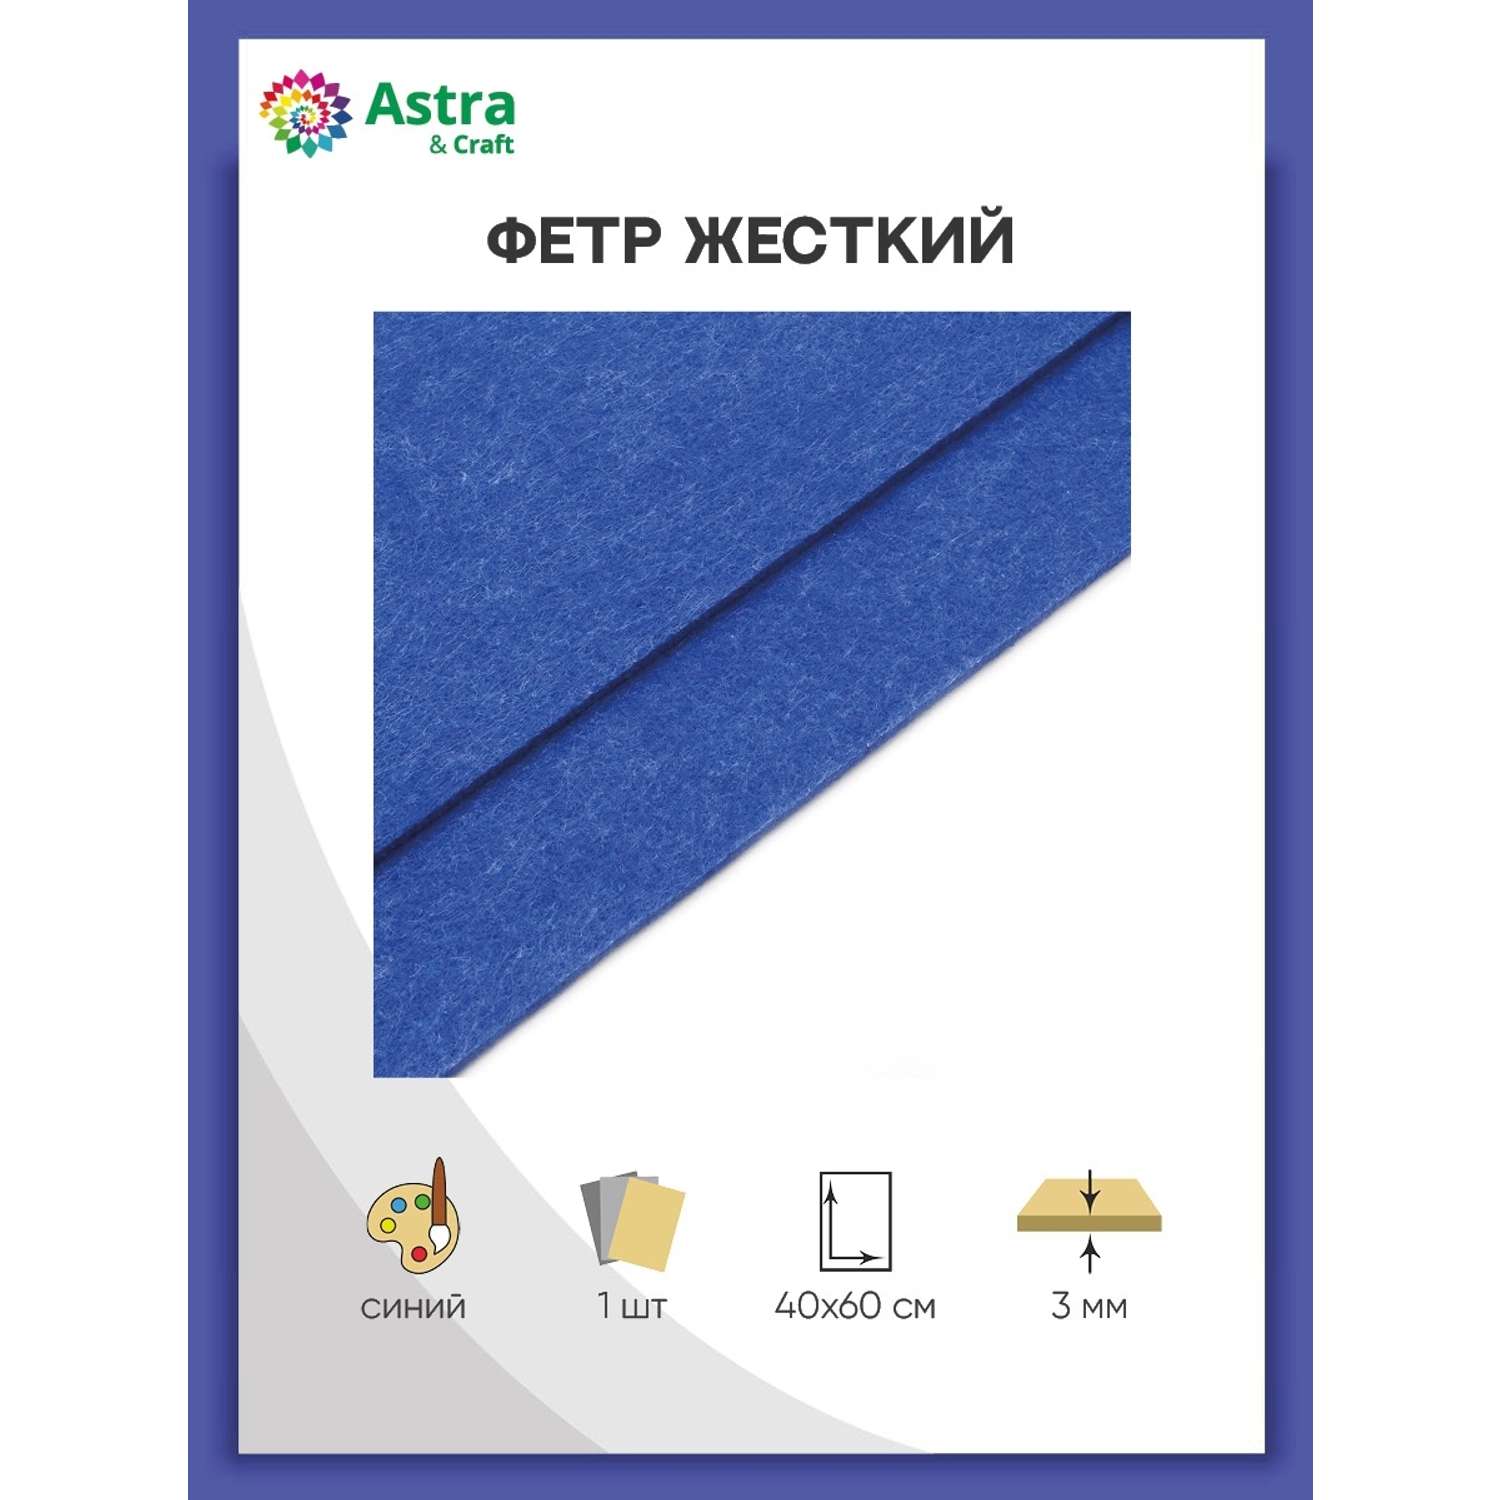 Фетр Astra Craft Листовой жесткий толщина 3 мм размер 40х60 см в упаковке 1 шт цвет синий - фото 1